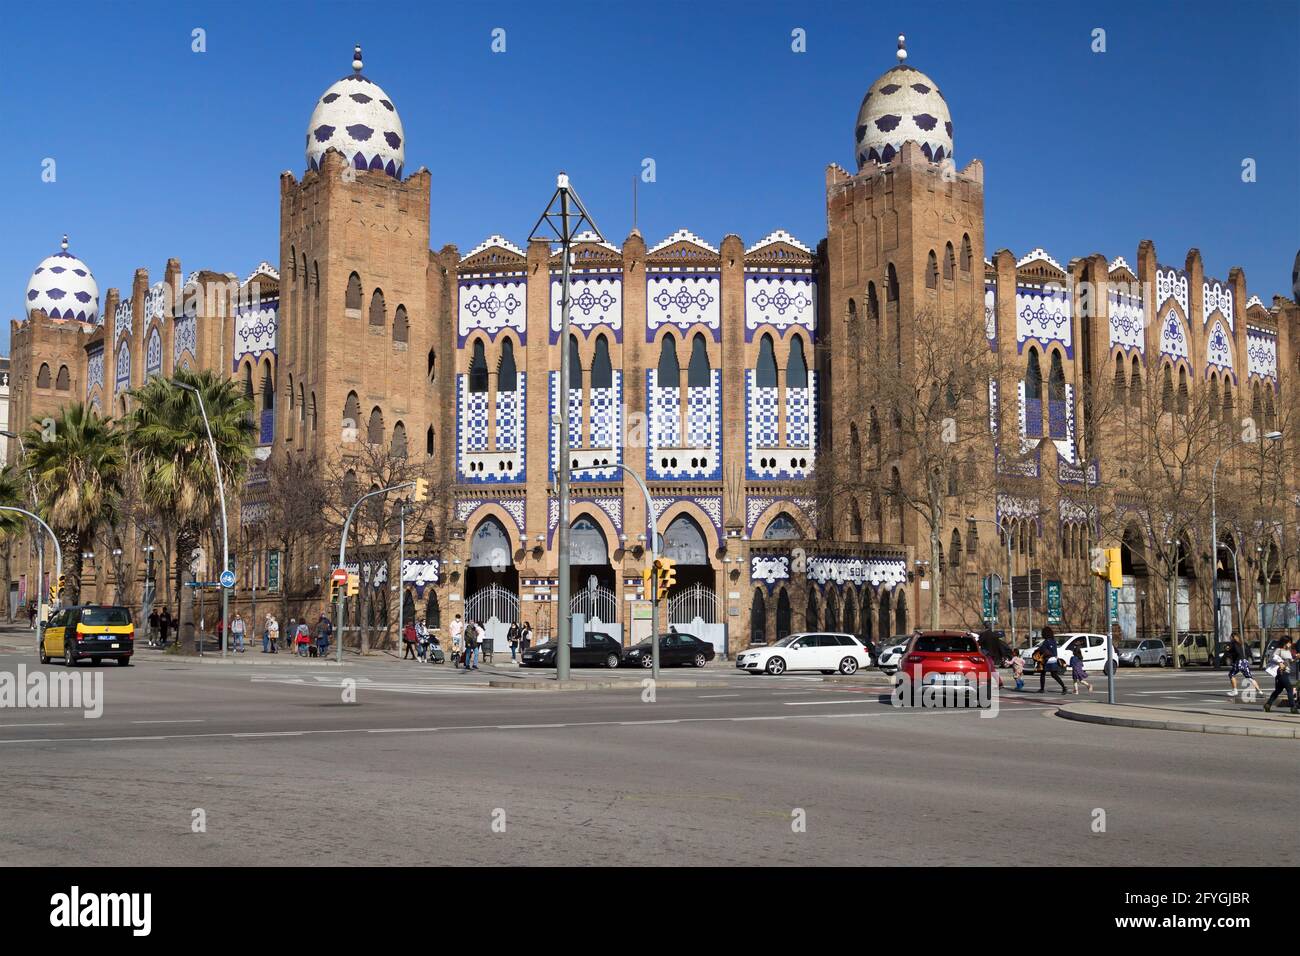 Barcelona, Spain - February 28, 2021: Bullfighting arena La Monumental in Barcelona, Spain. Stock Photo